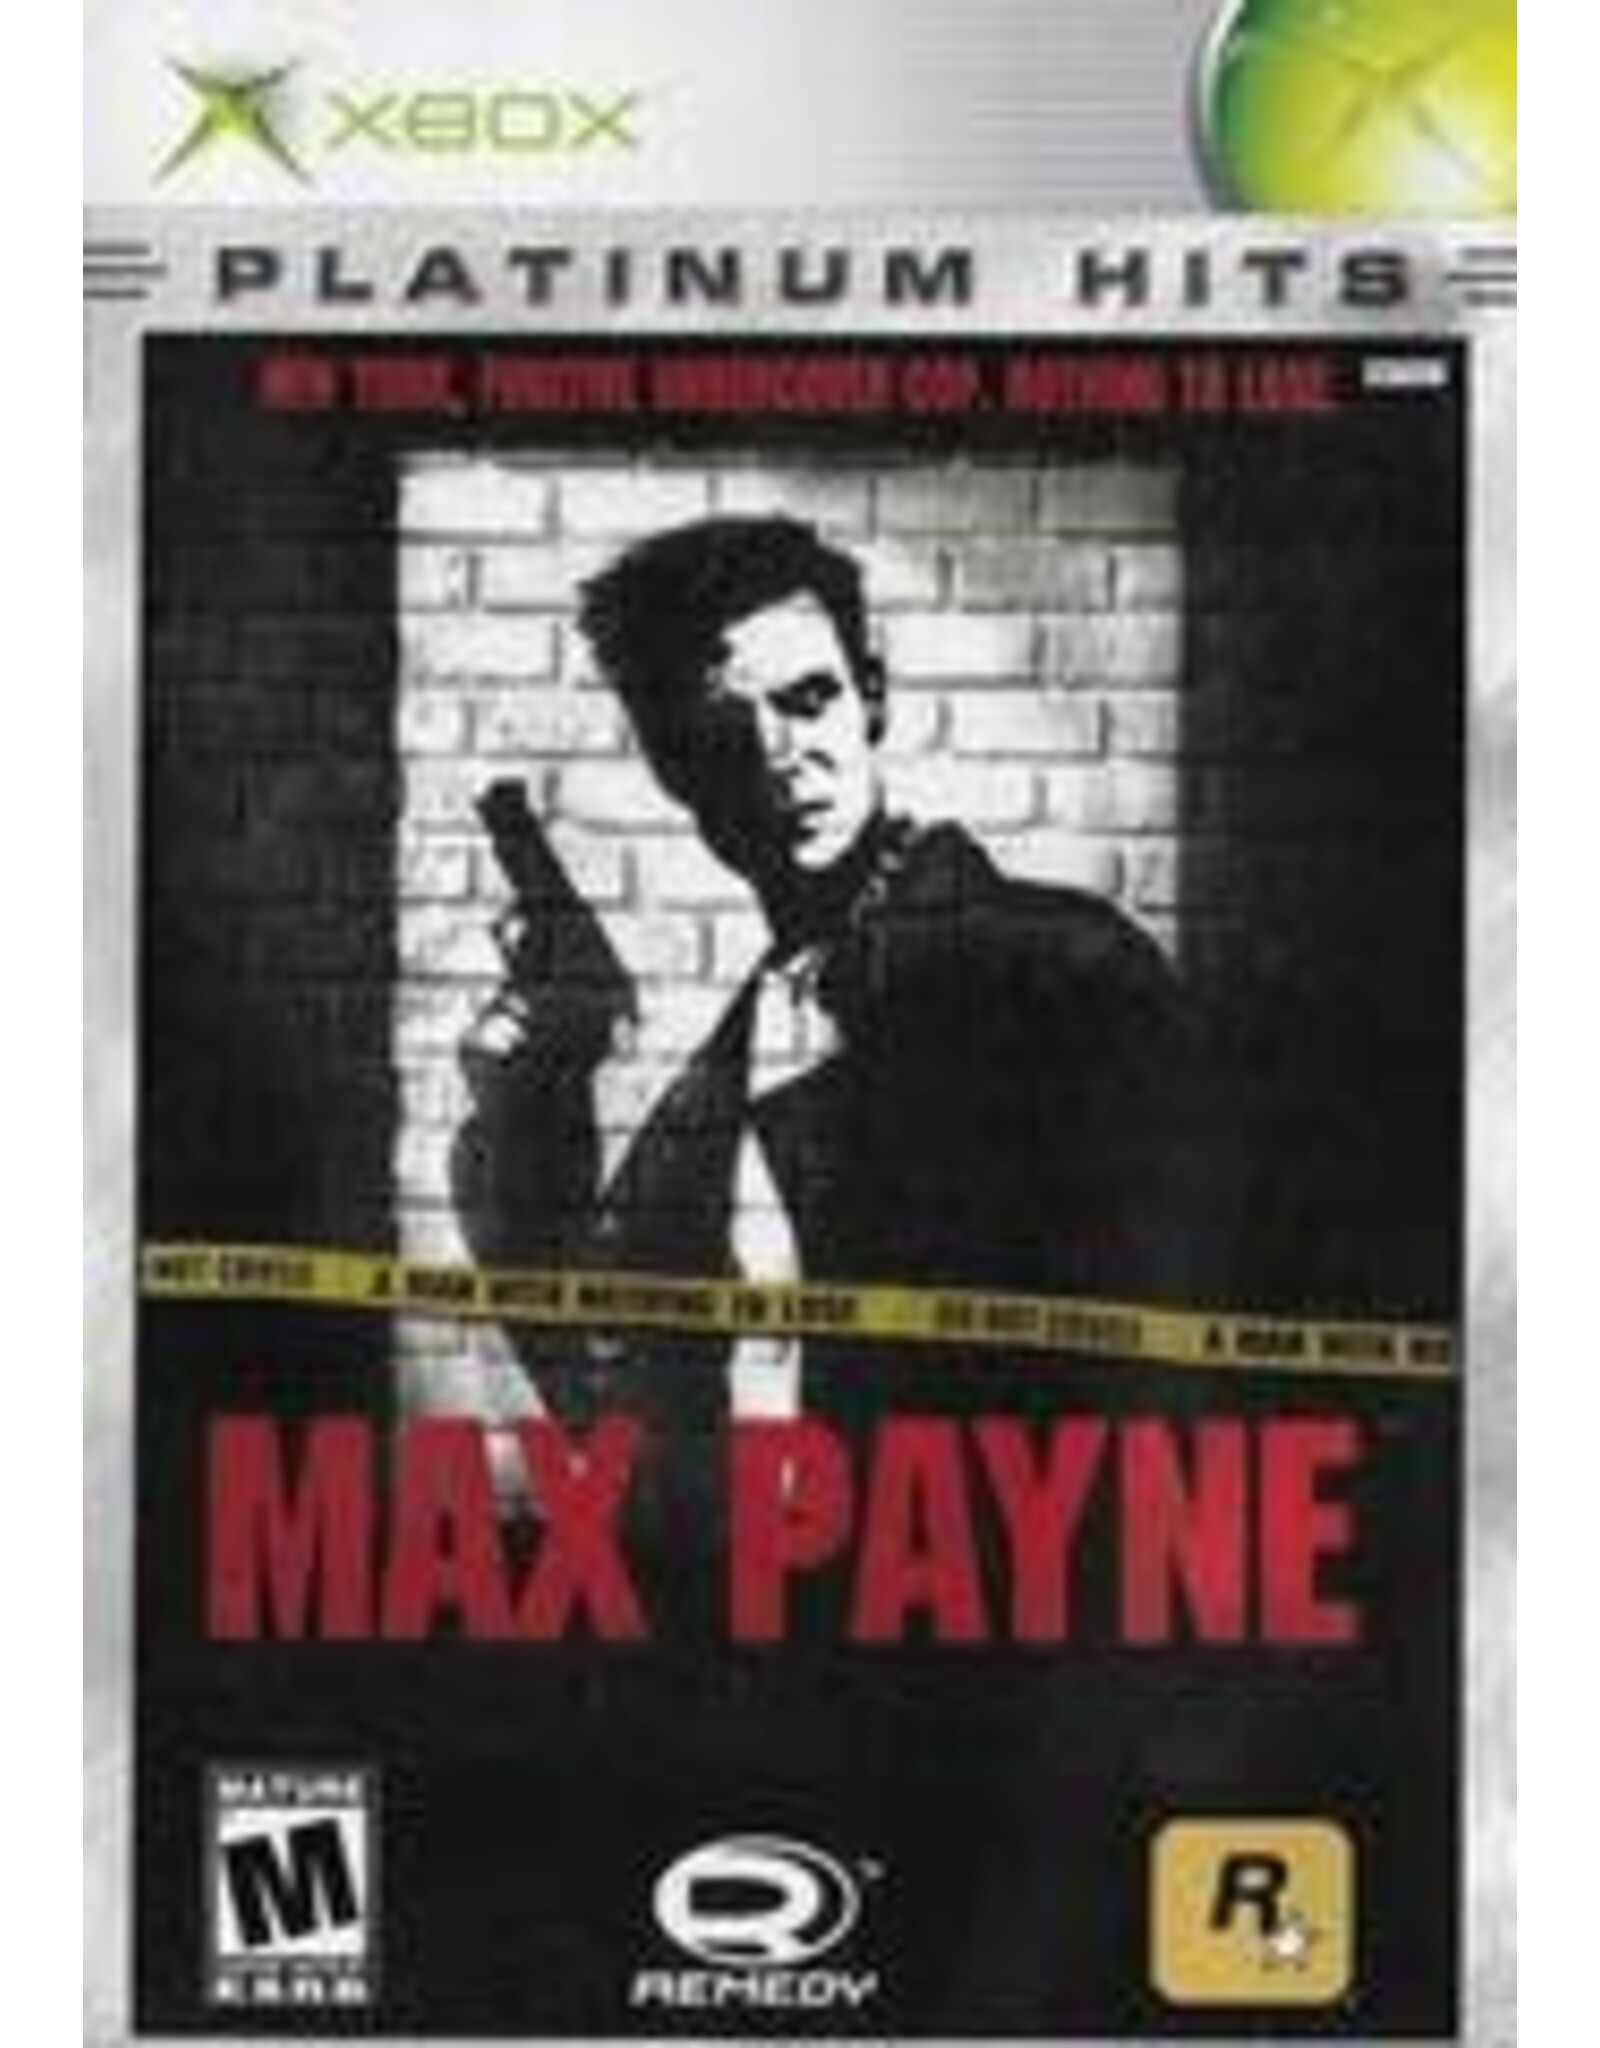 Xbox Max Payne (Platinum Hits, No Manual)